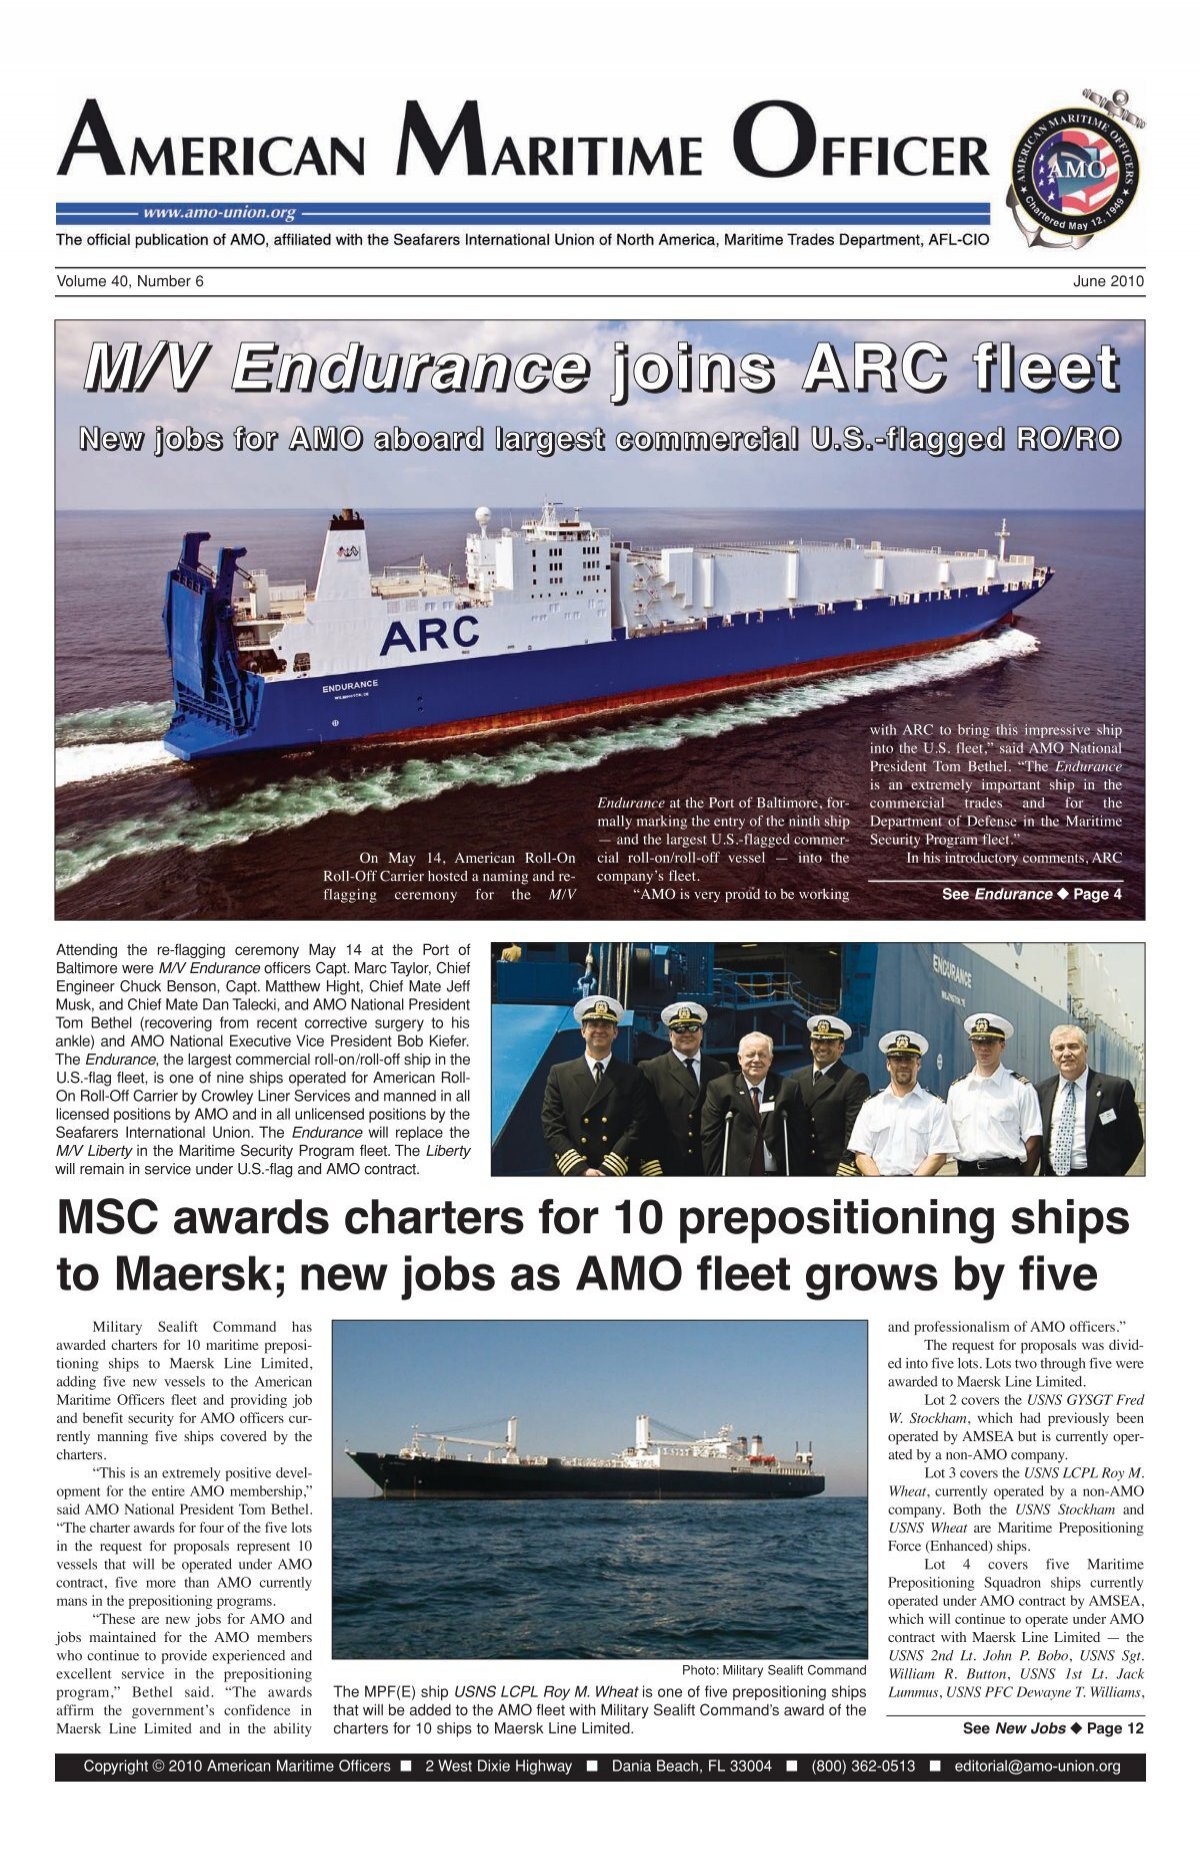 Endurance ARC fleet - Maritime Officers